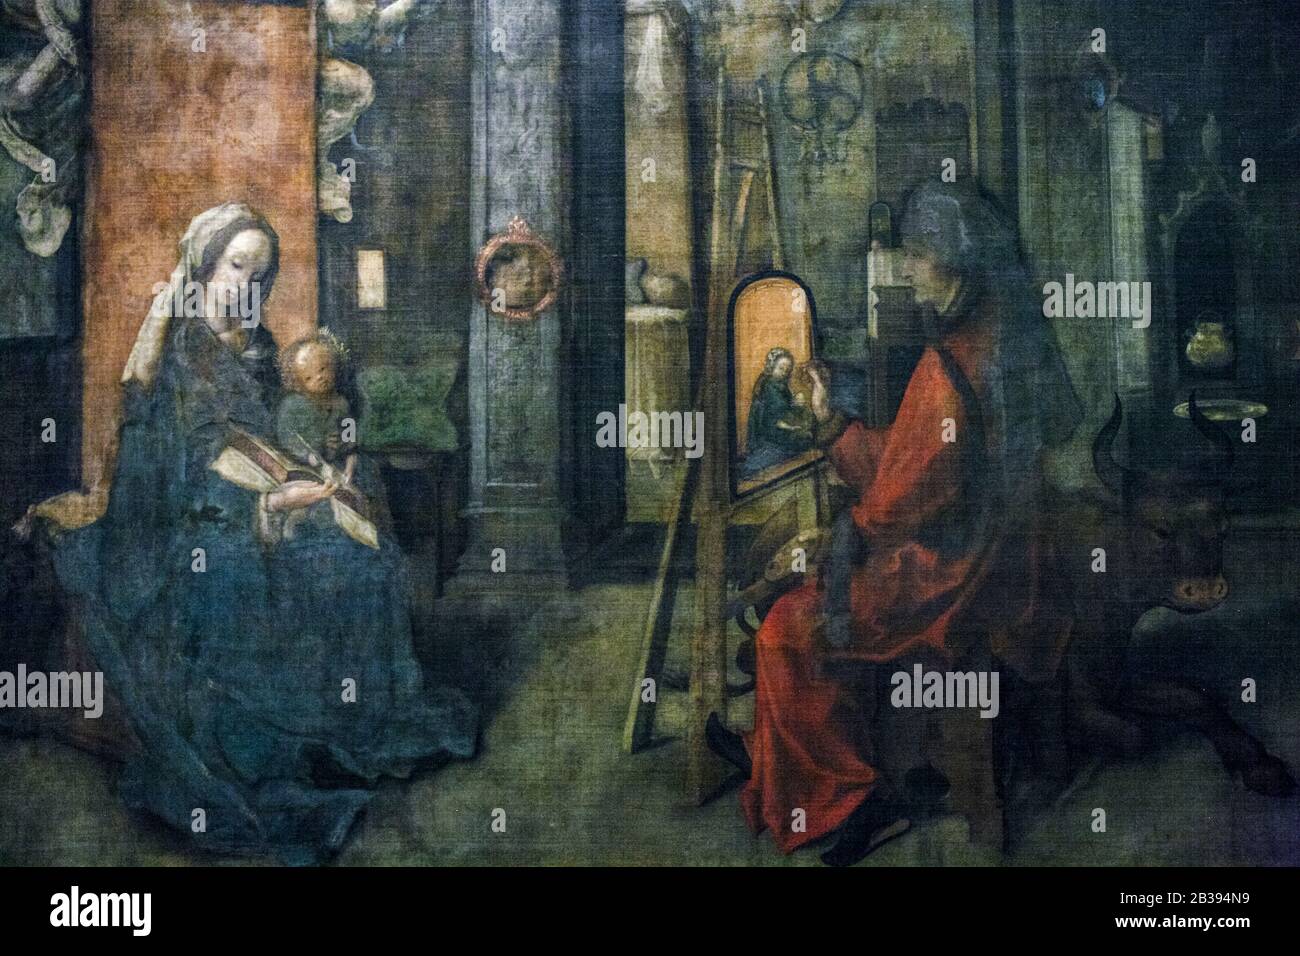 Italie Lombardie Milan Brera Art Gallery - Saint Luke dans l'acte de peinture de la Madonna et de l'enfant. Ecole d'Anvers XVIe siècle Banque D'Images